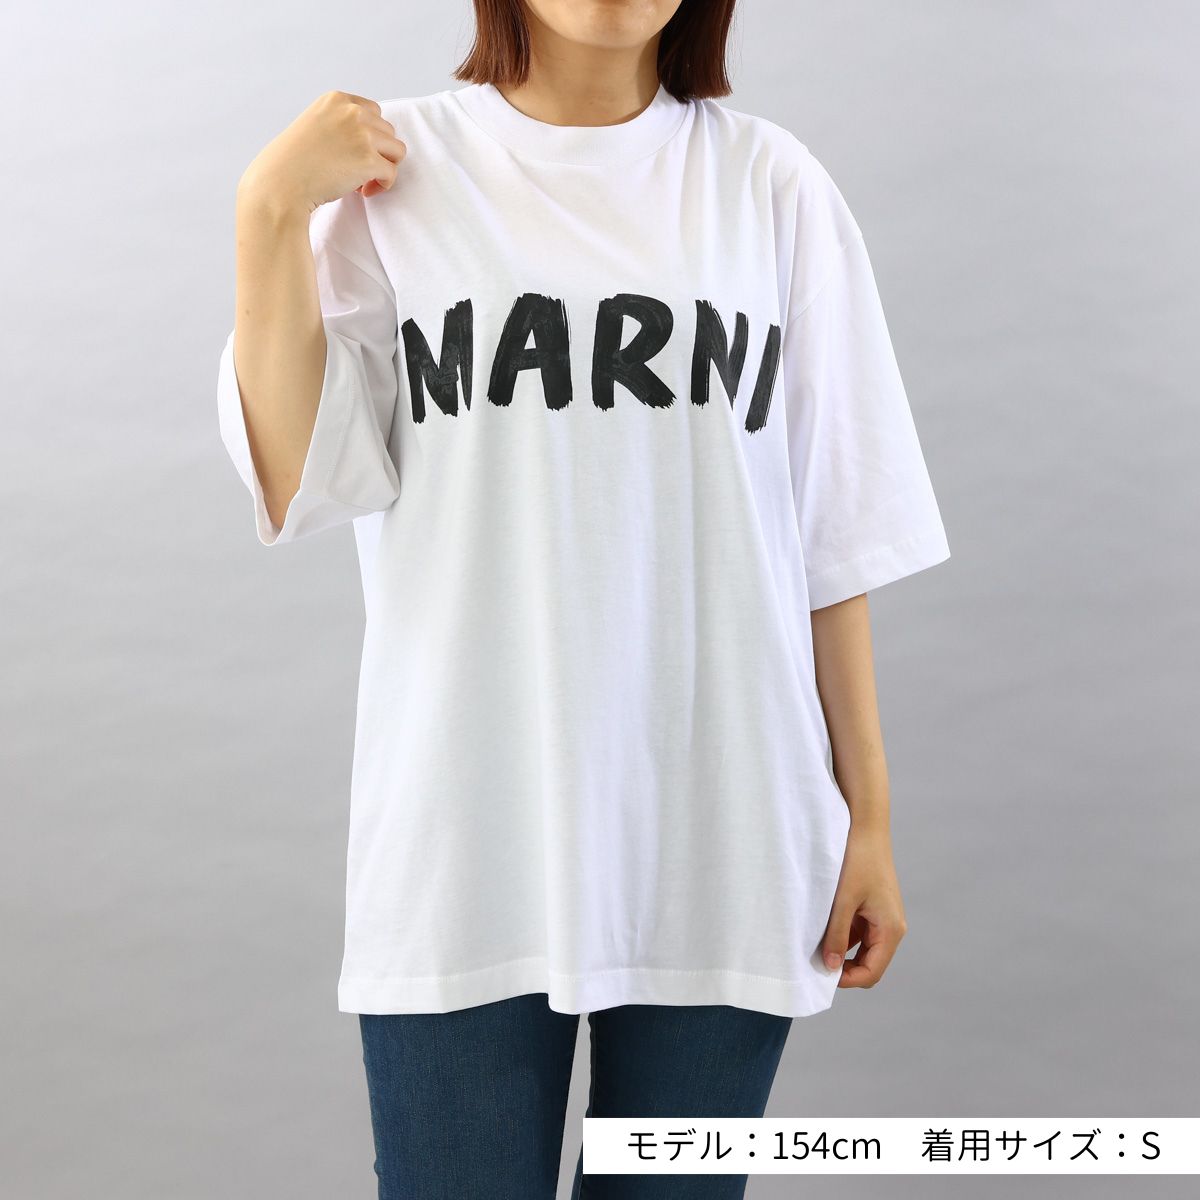 マルニ MARNI Tシャツ ロゴT コットン 半袖 おしゃれ 人気 